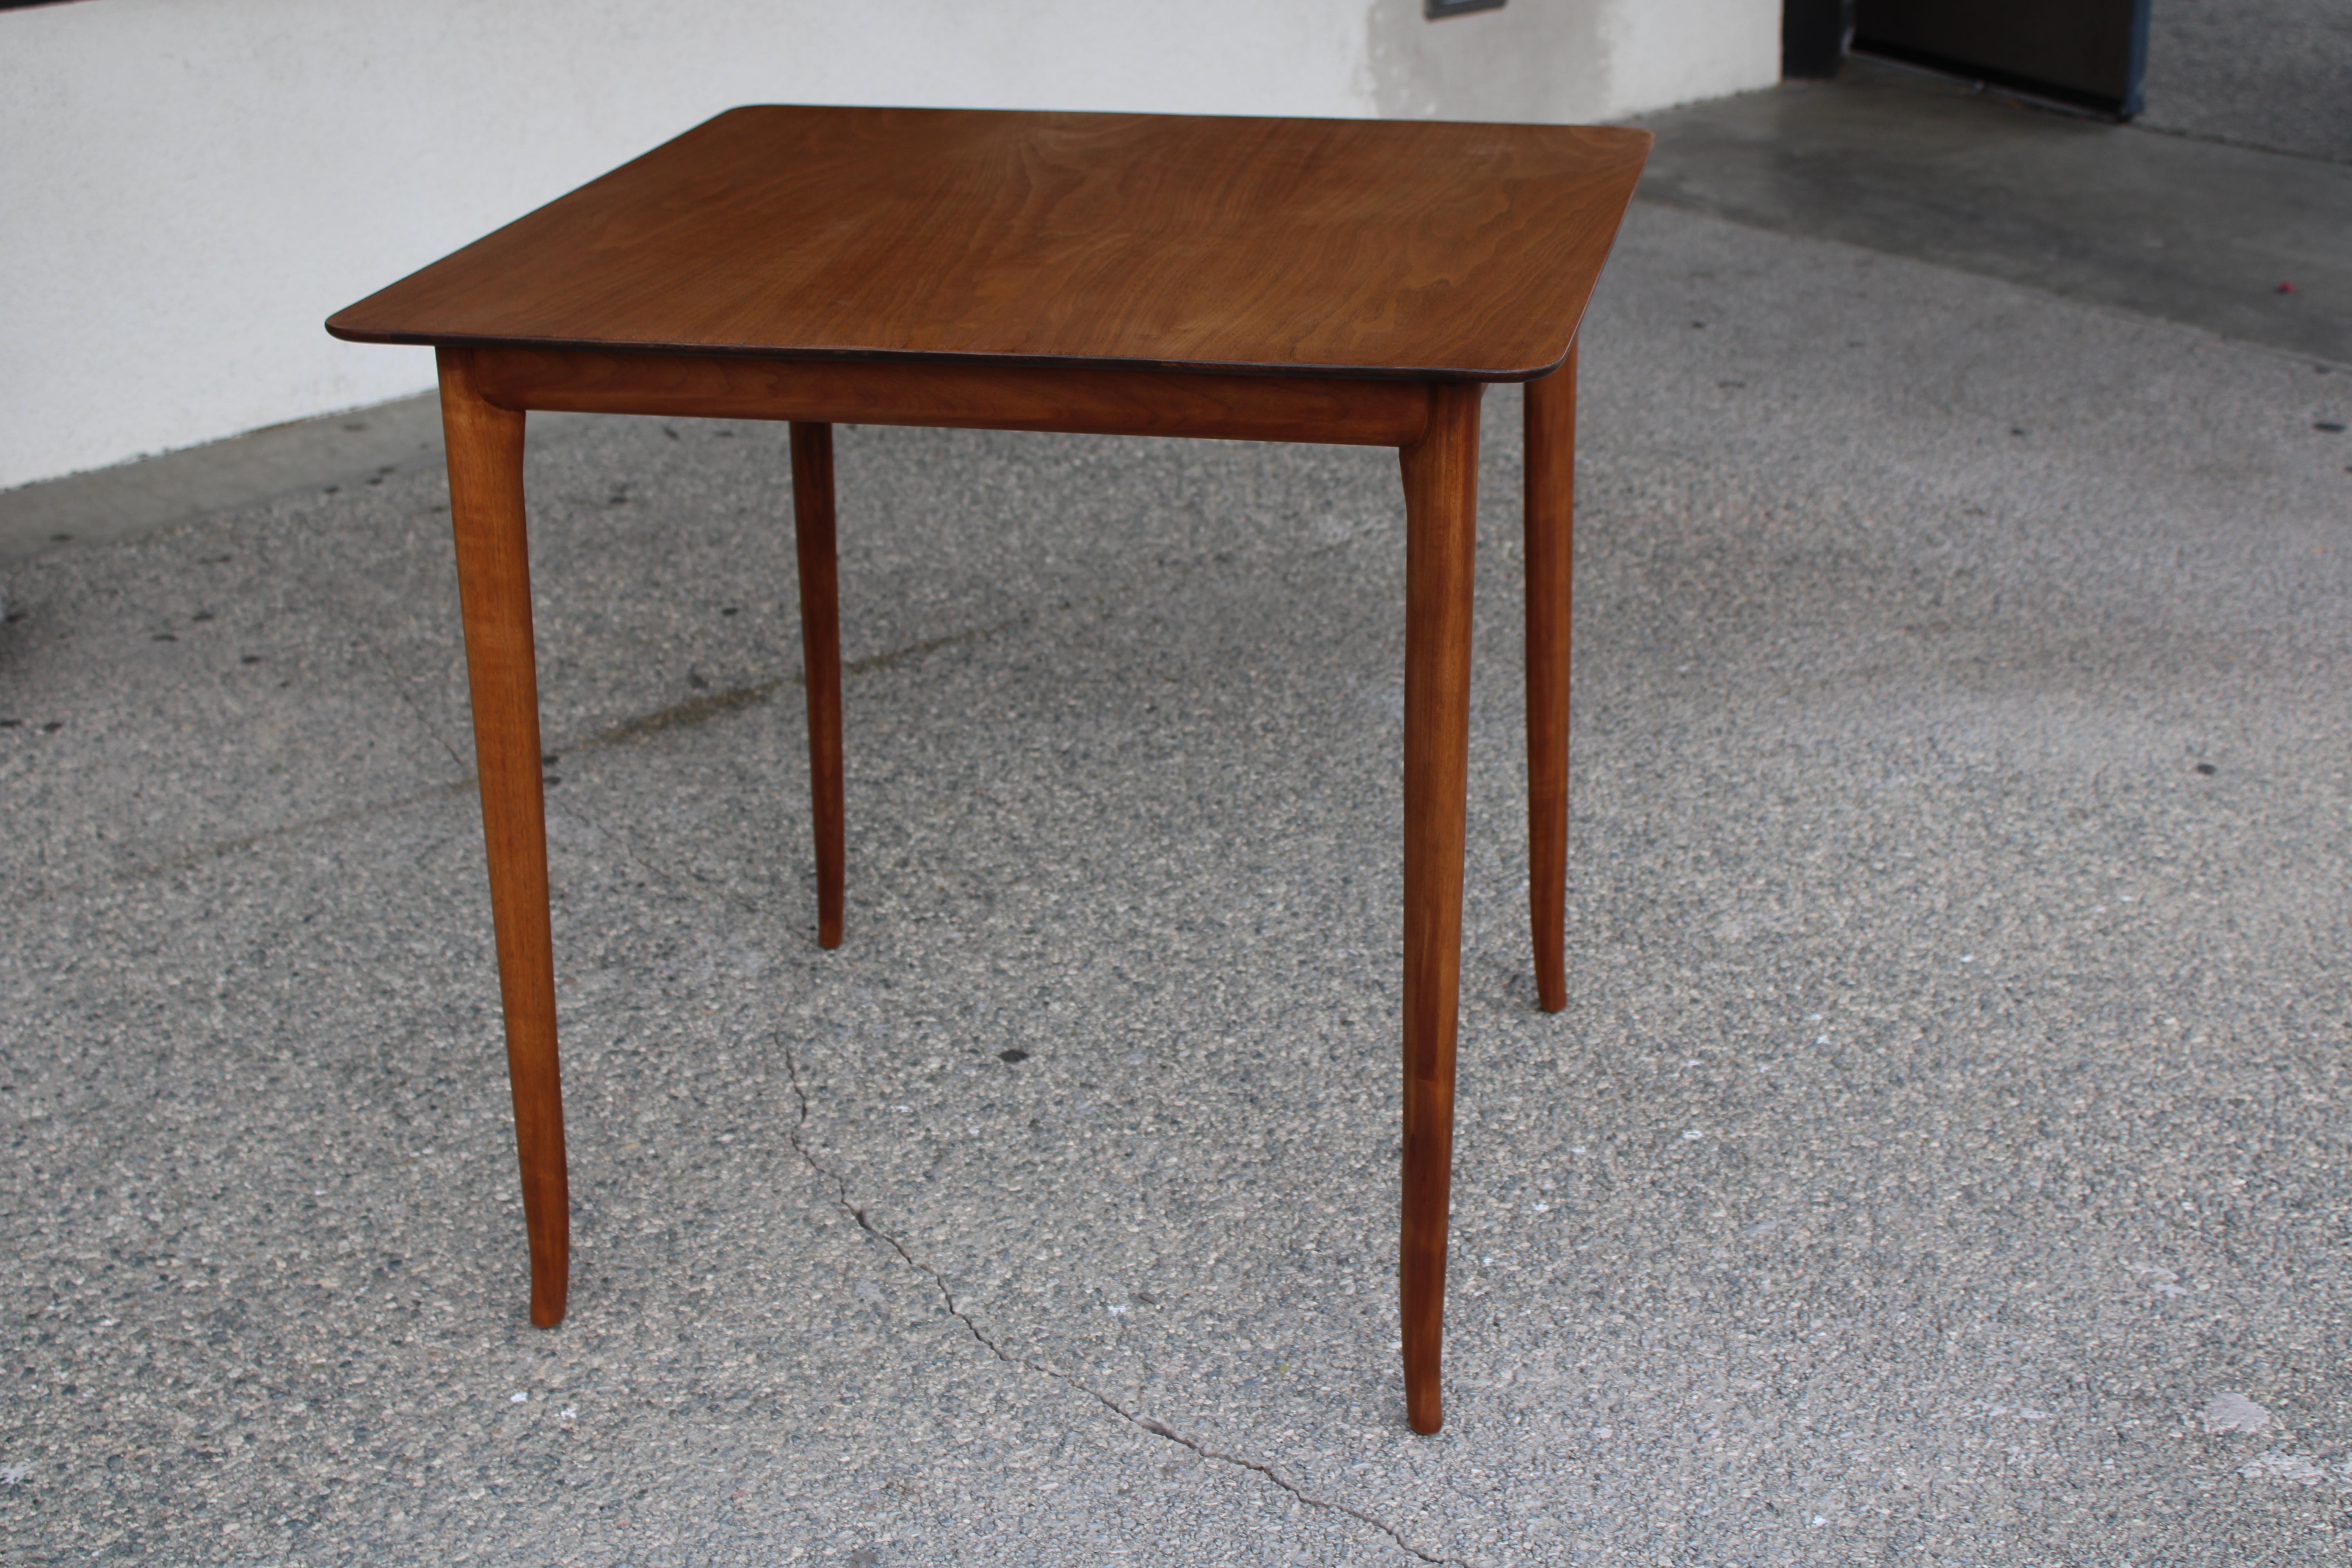 Mid-Century Modern Widdicomb Table Designed by T.H. Robsjohn - Gibbings For Sale